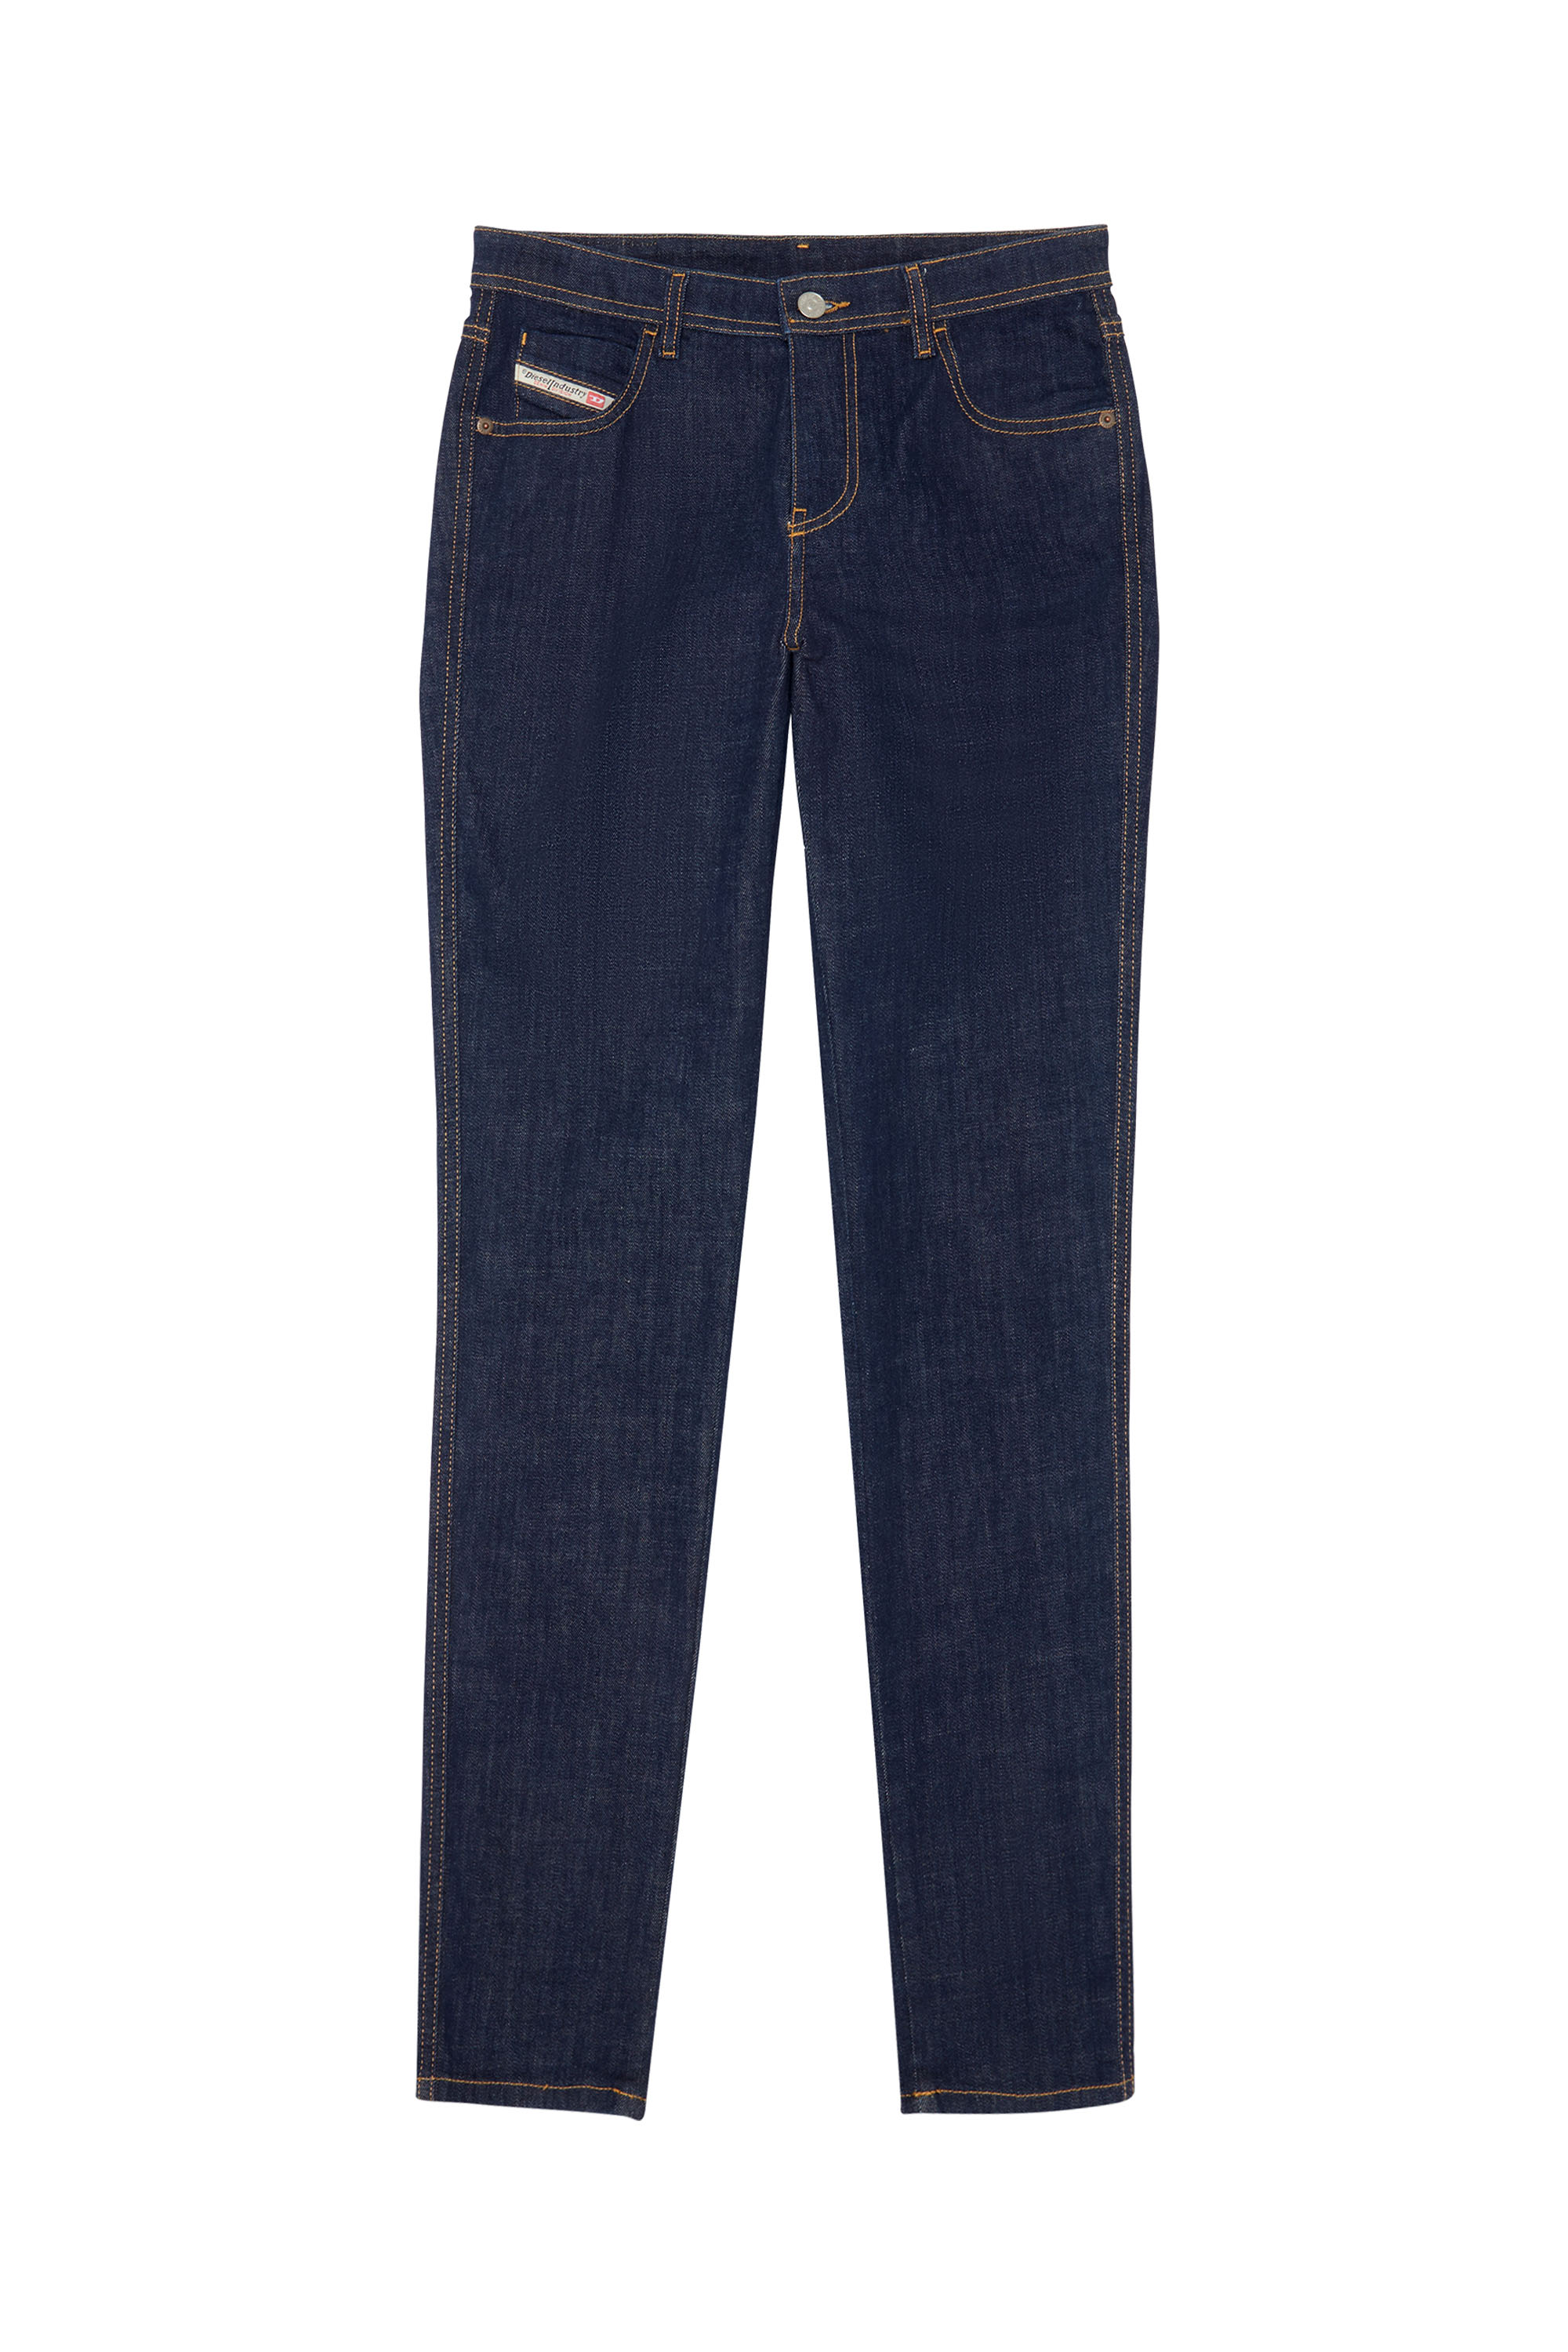 Skinny Jeans 2015 Babhila Z9C17, Dark Blue - Jeans